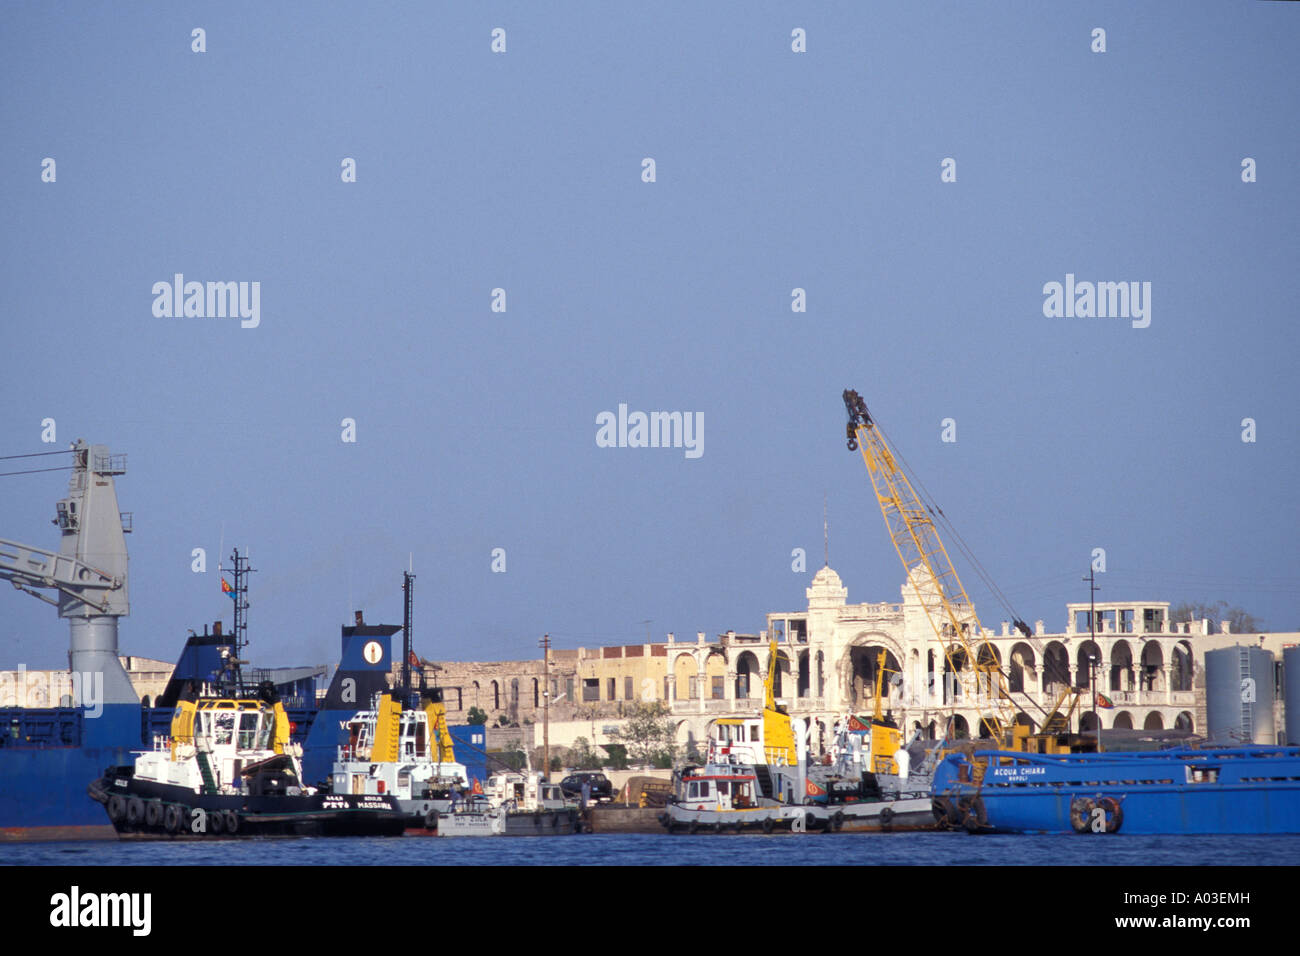 Abbildung des Hafen Massawa am Roten Meer in Eritrea mit Haile Selassie Palast im Hintergrund Stockfoto